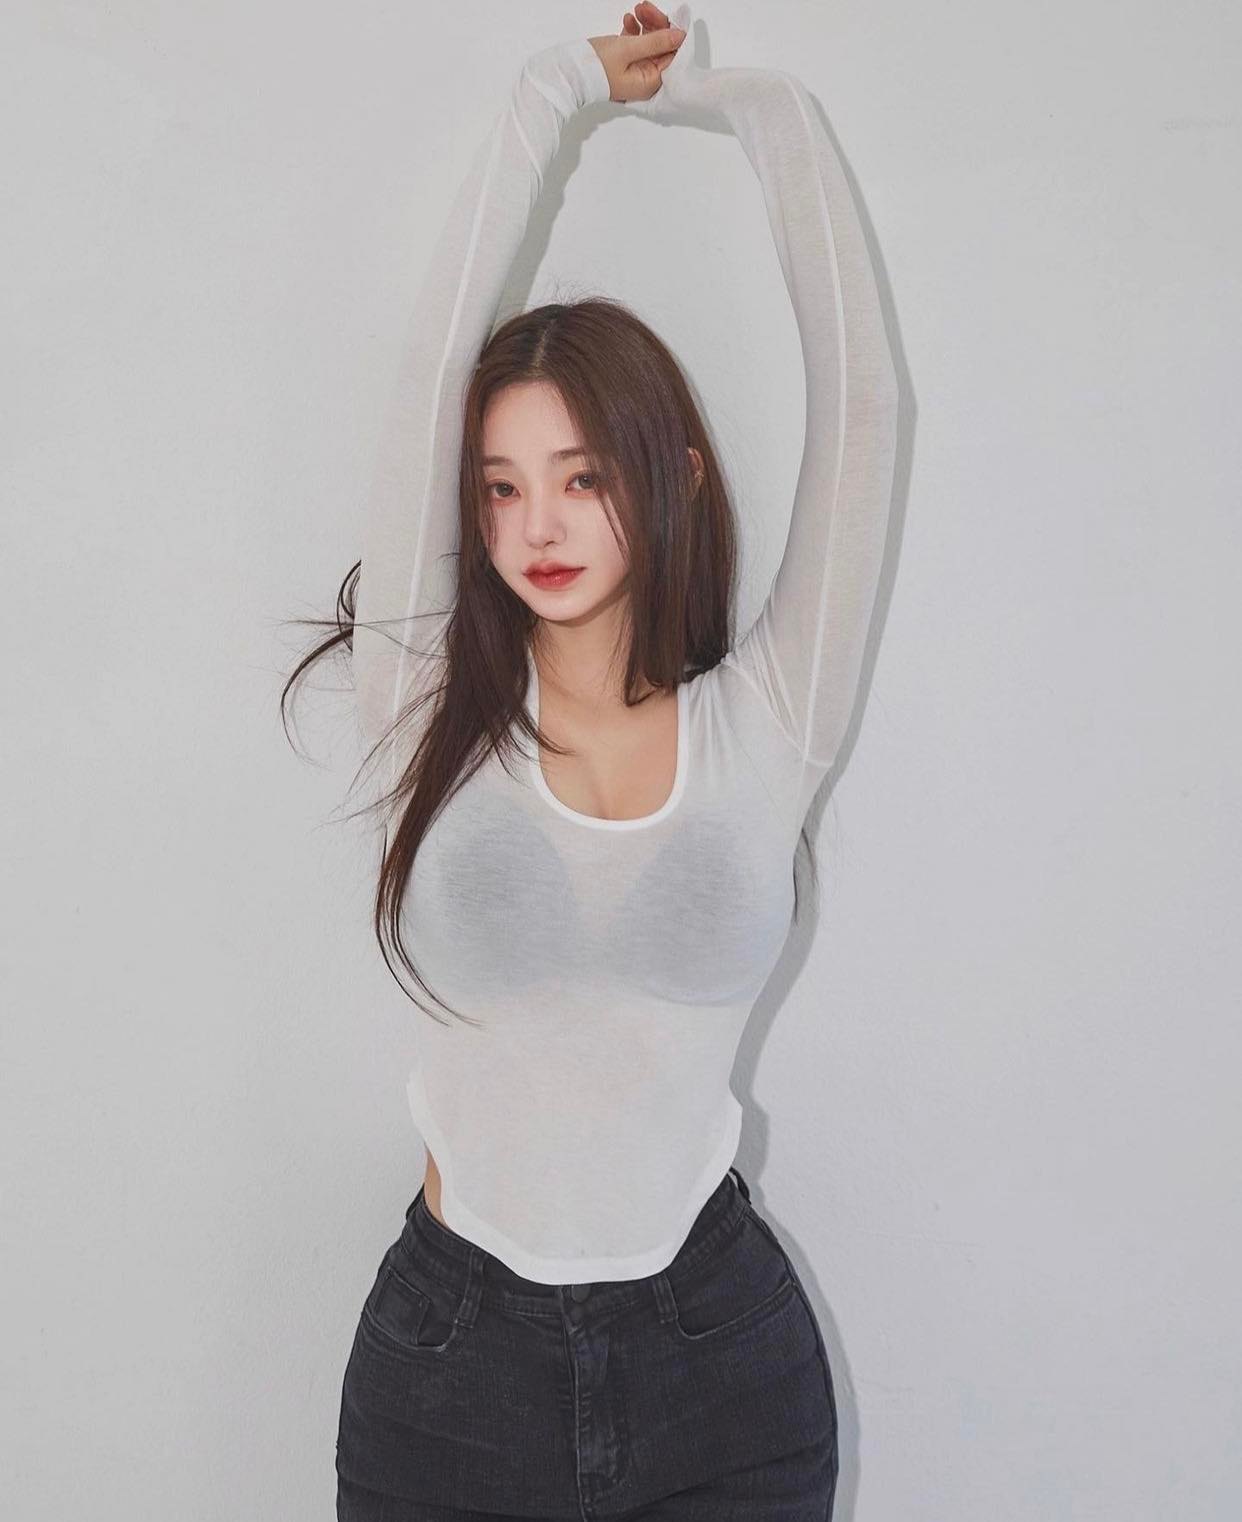 Các cô gái Hàn chuộng style mặc “tôn 1 điểm trên cơ thể” - Ảnh 4.